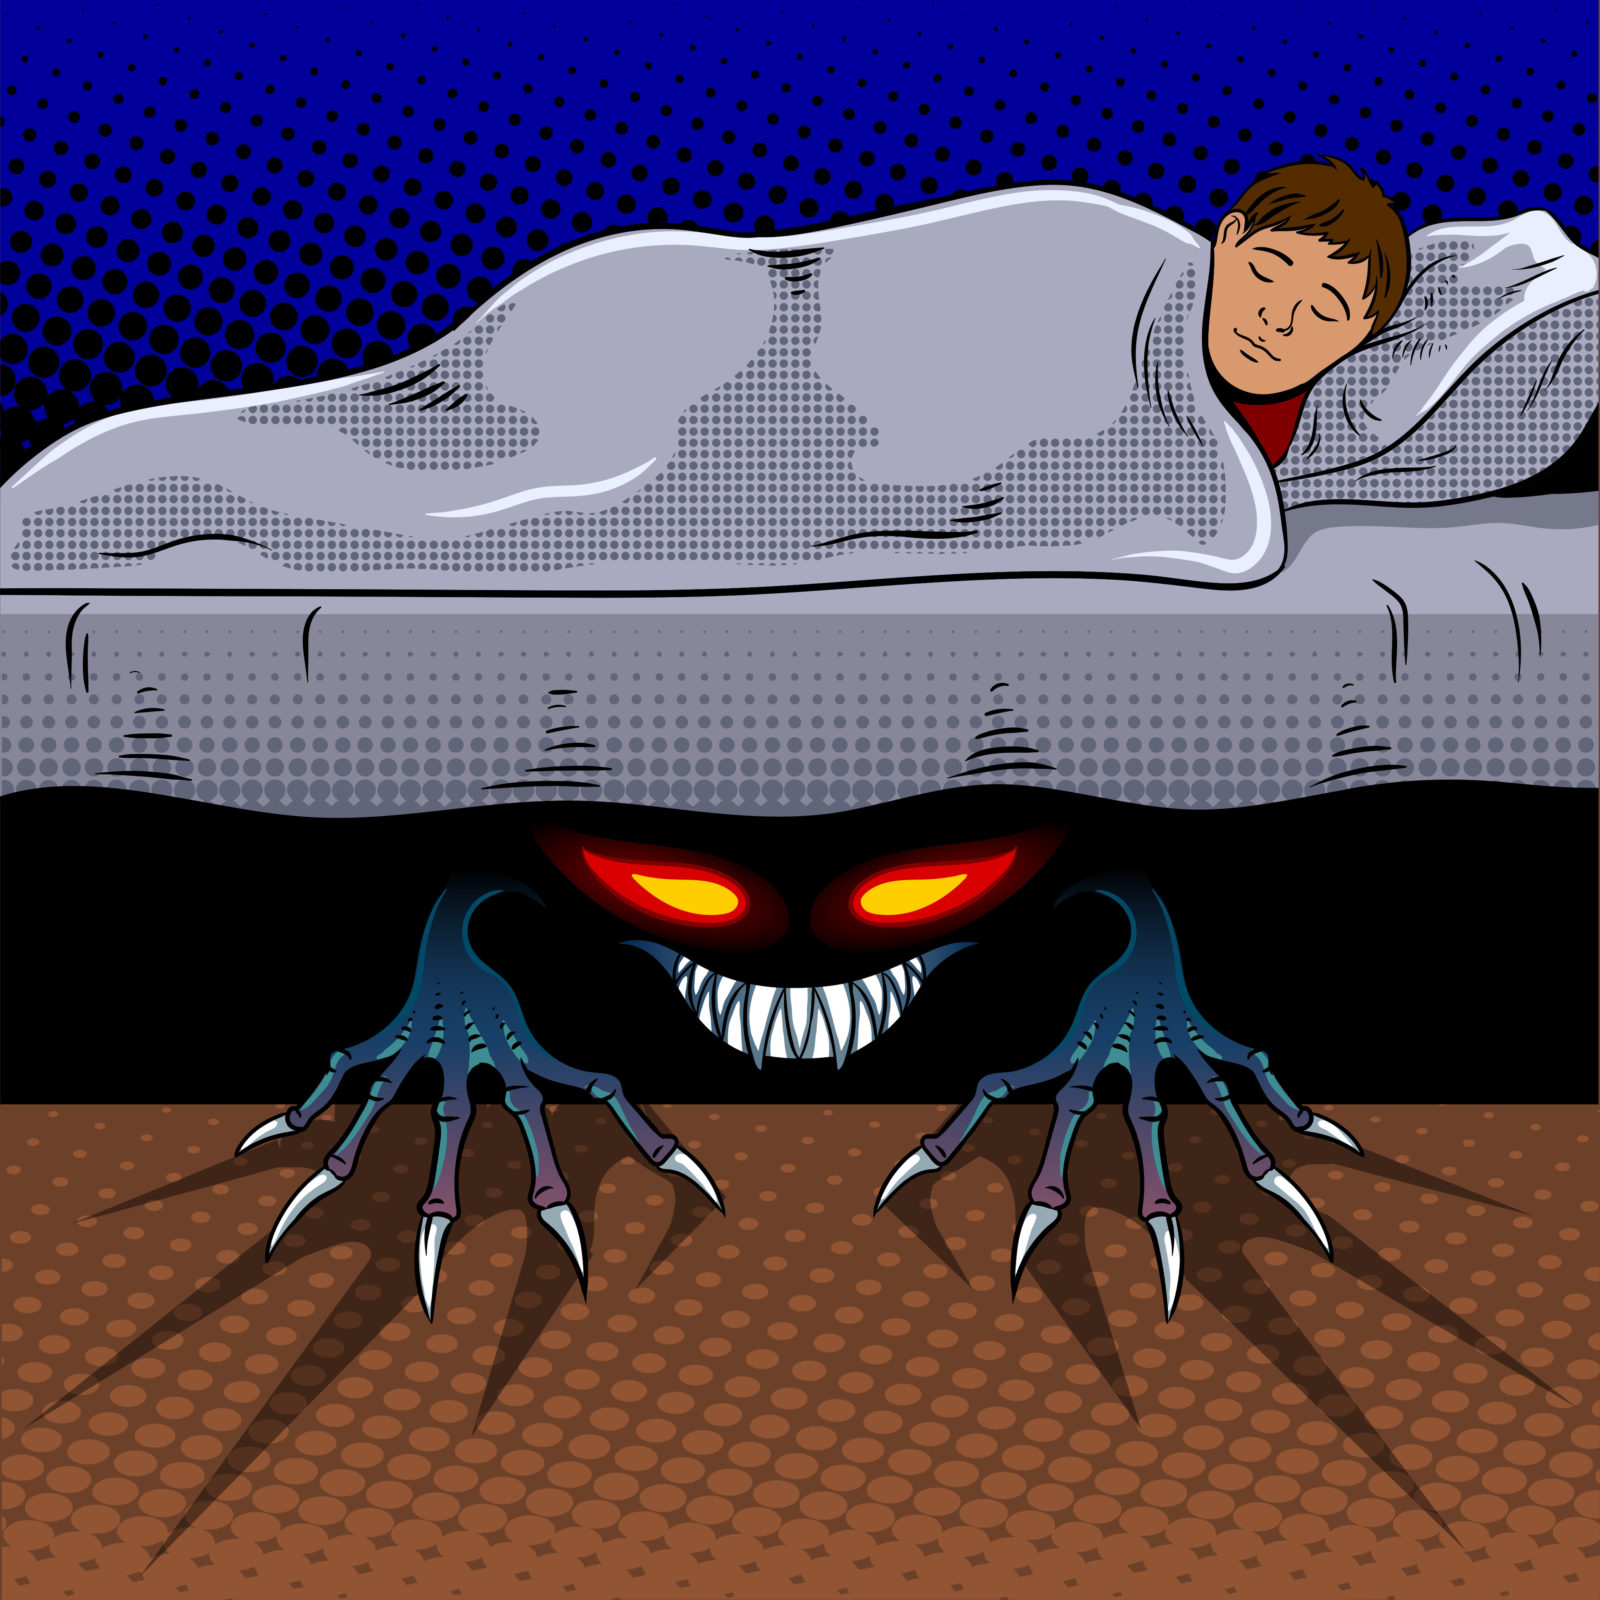 Monster under the bed дорама. Чудовище из под кровати.